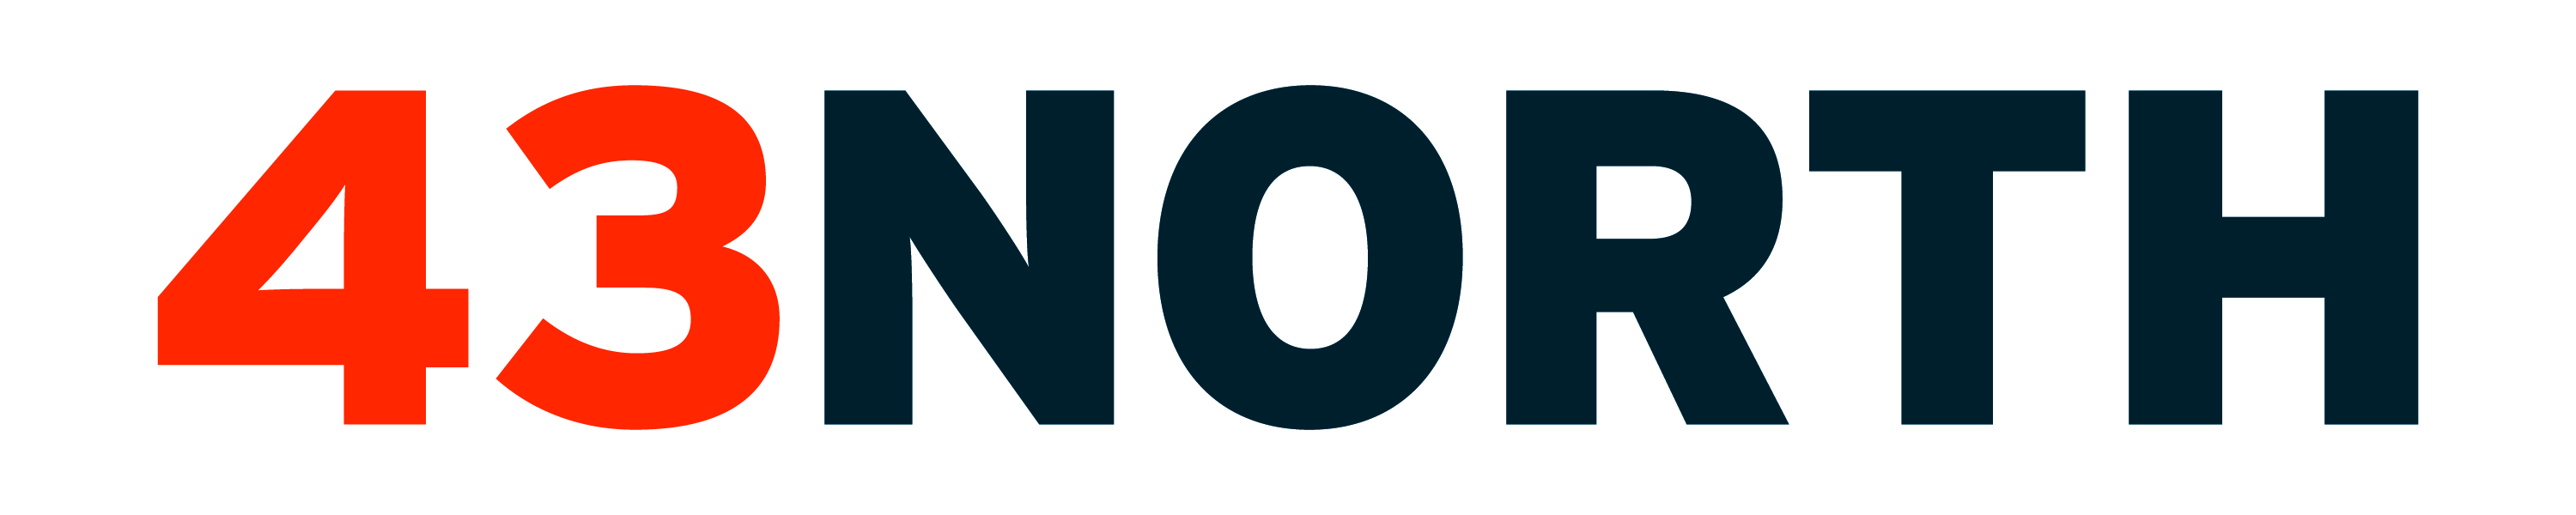 43North company logo